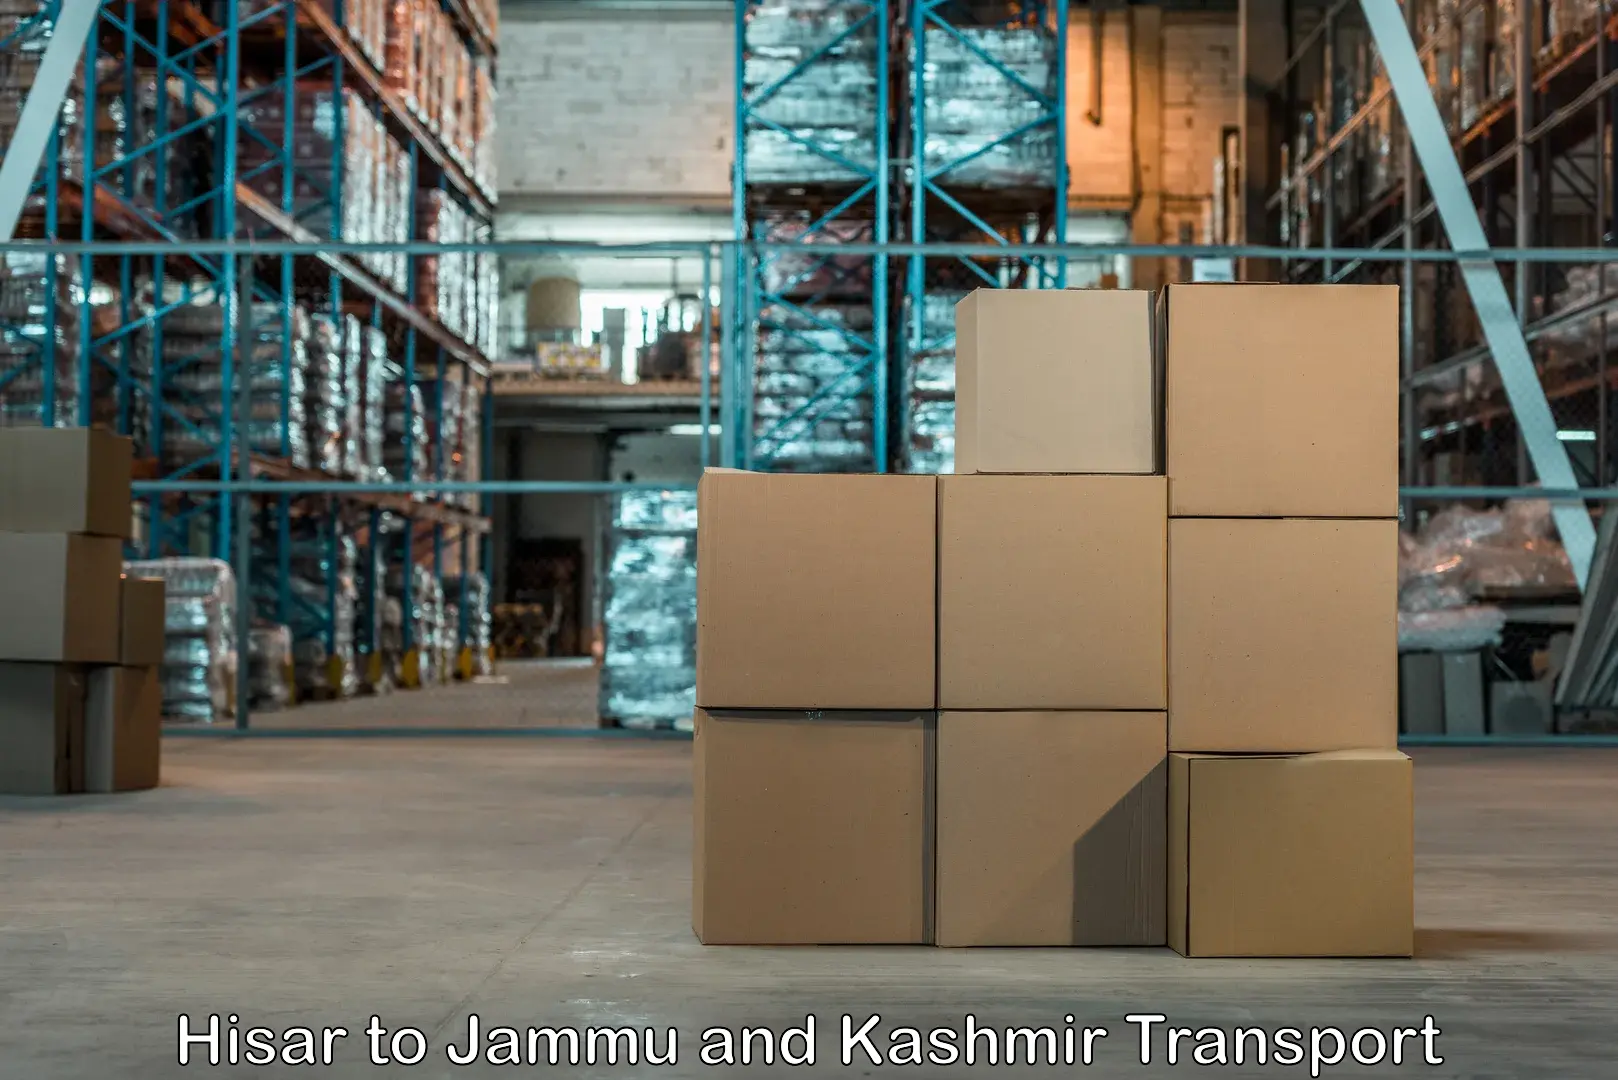 Transport in sharing Hisar to Srinagar Kashmir